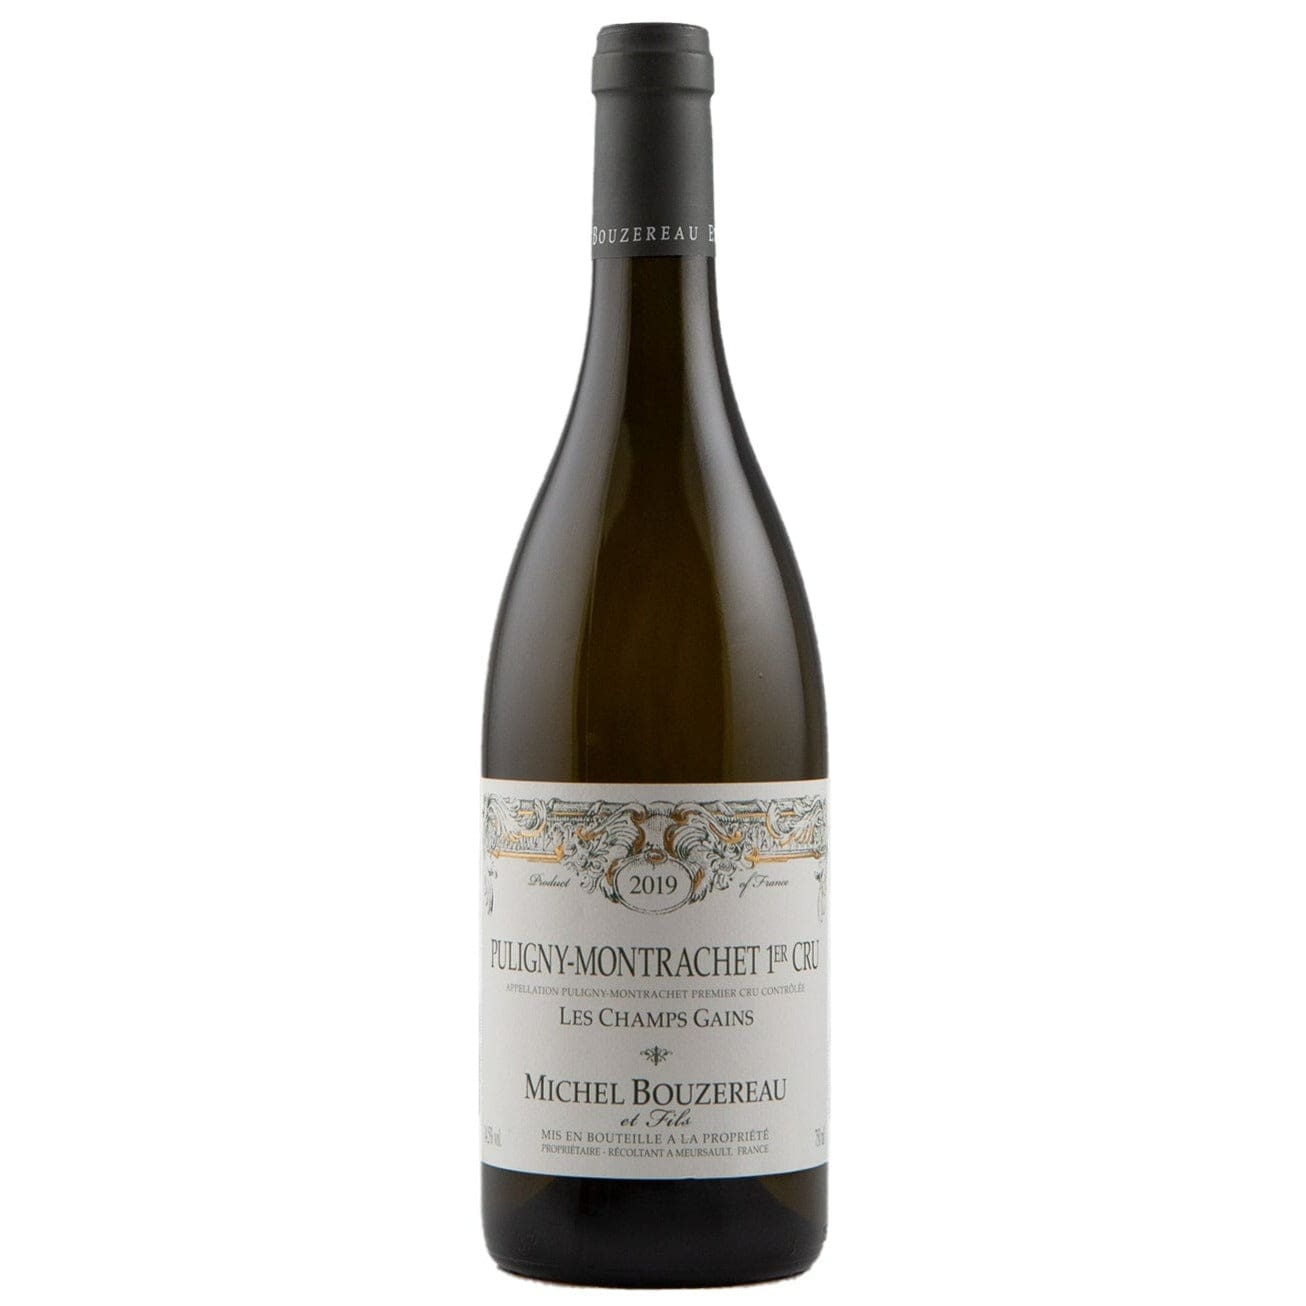 Single bottle of White wine Michel Bouzereau, Les Champs Gains Premier Cru, Puligny Montrachet, 2019 100% Chardonnay